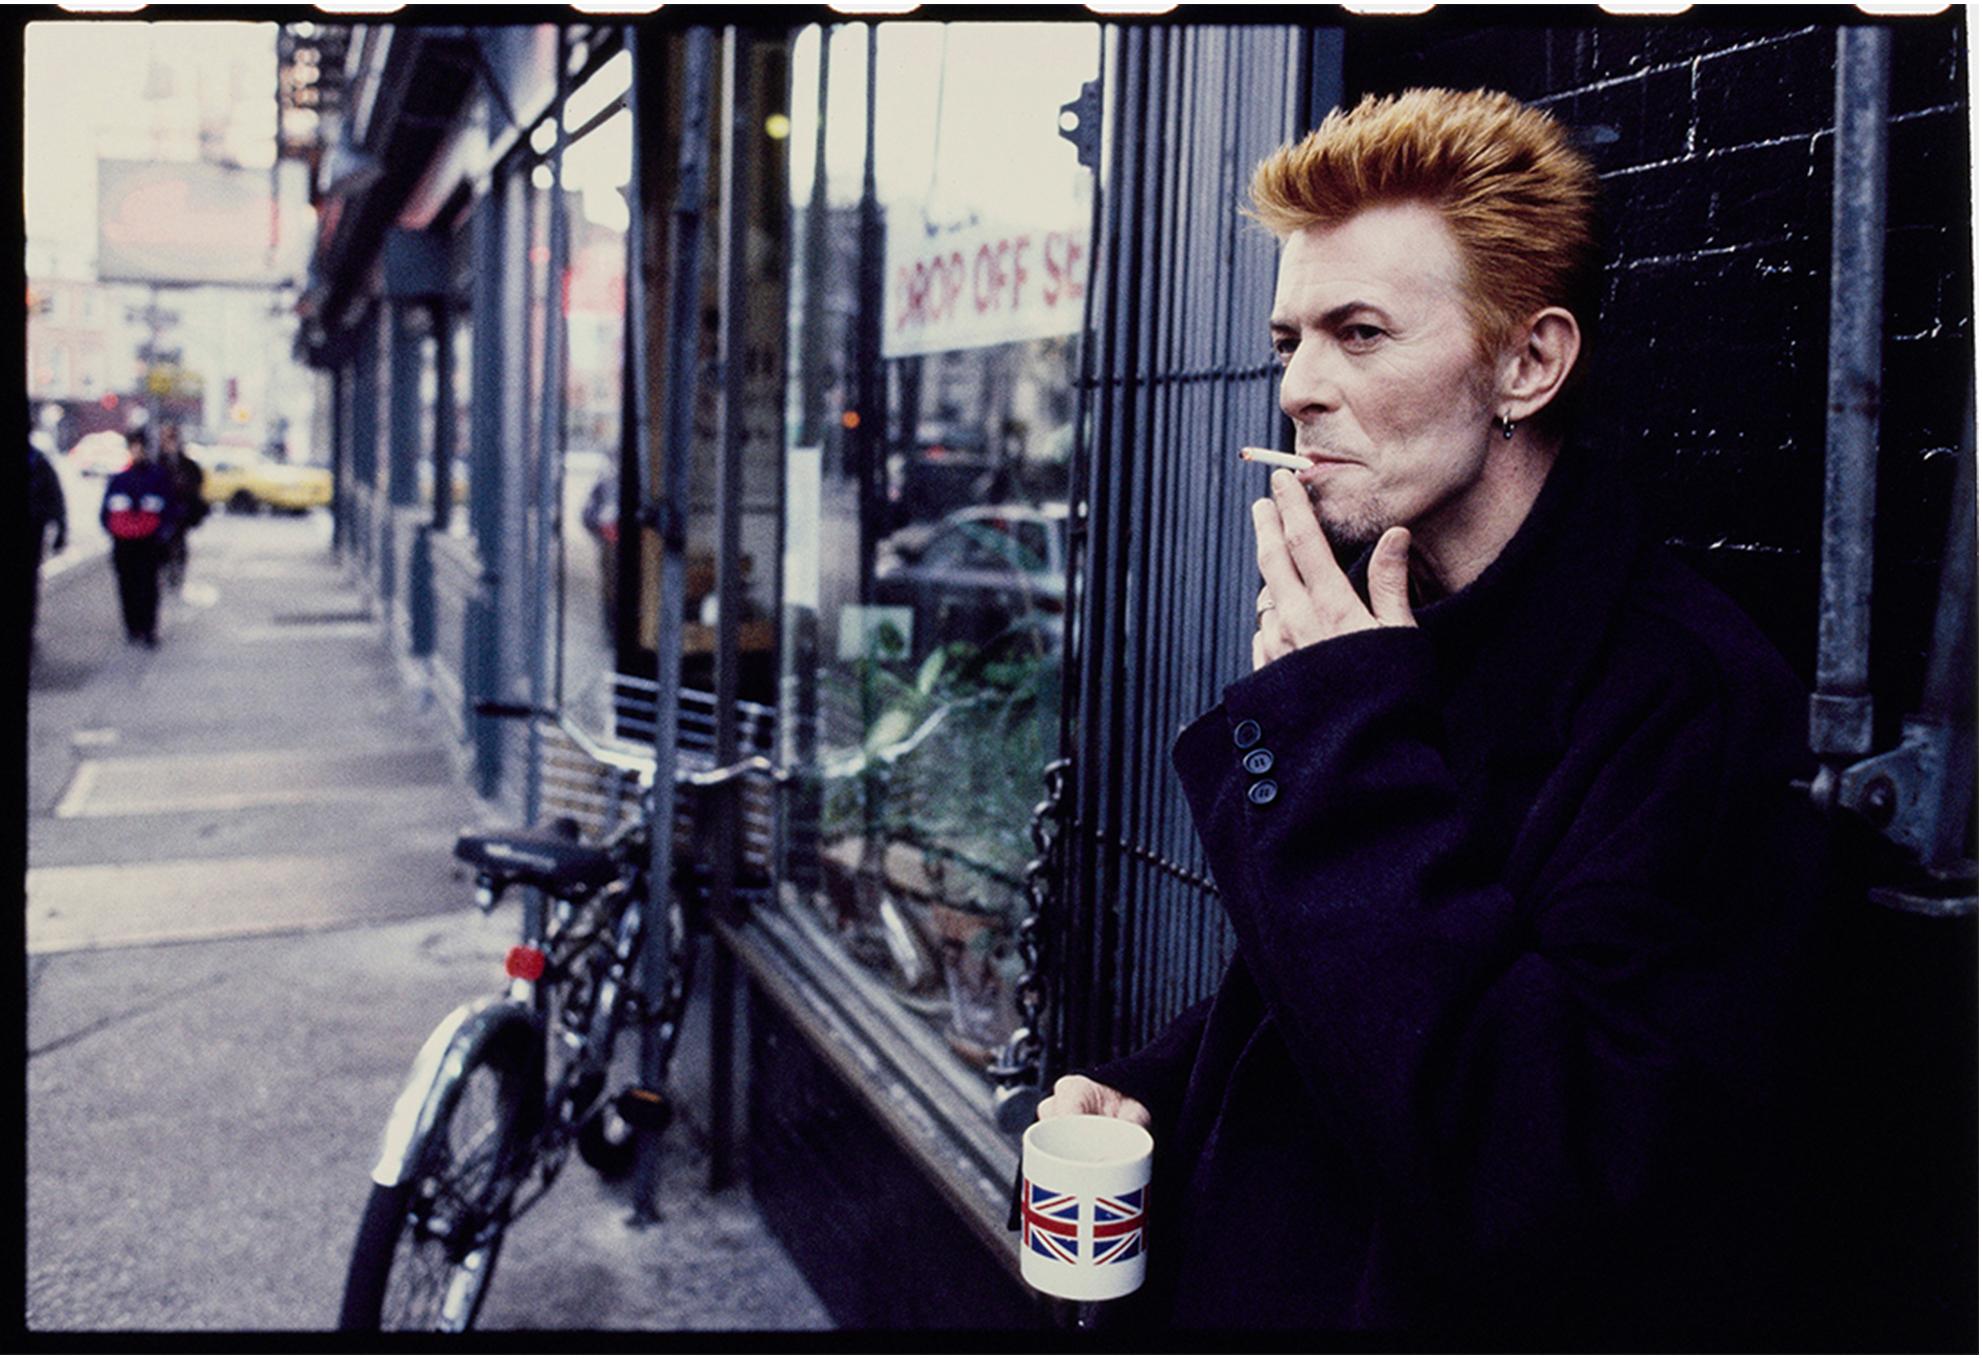 Kevin Cummins Portrait Photograph – David Bowie Tea and Sympathy New York City, gerahmter signierter Druck in limitierter Auflage